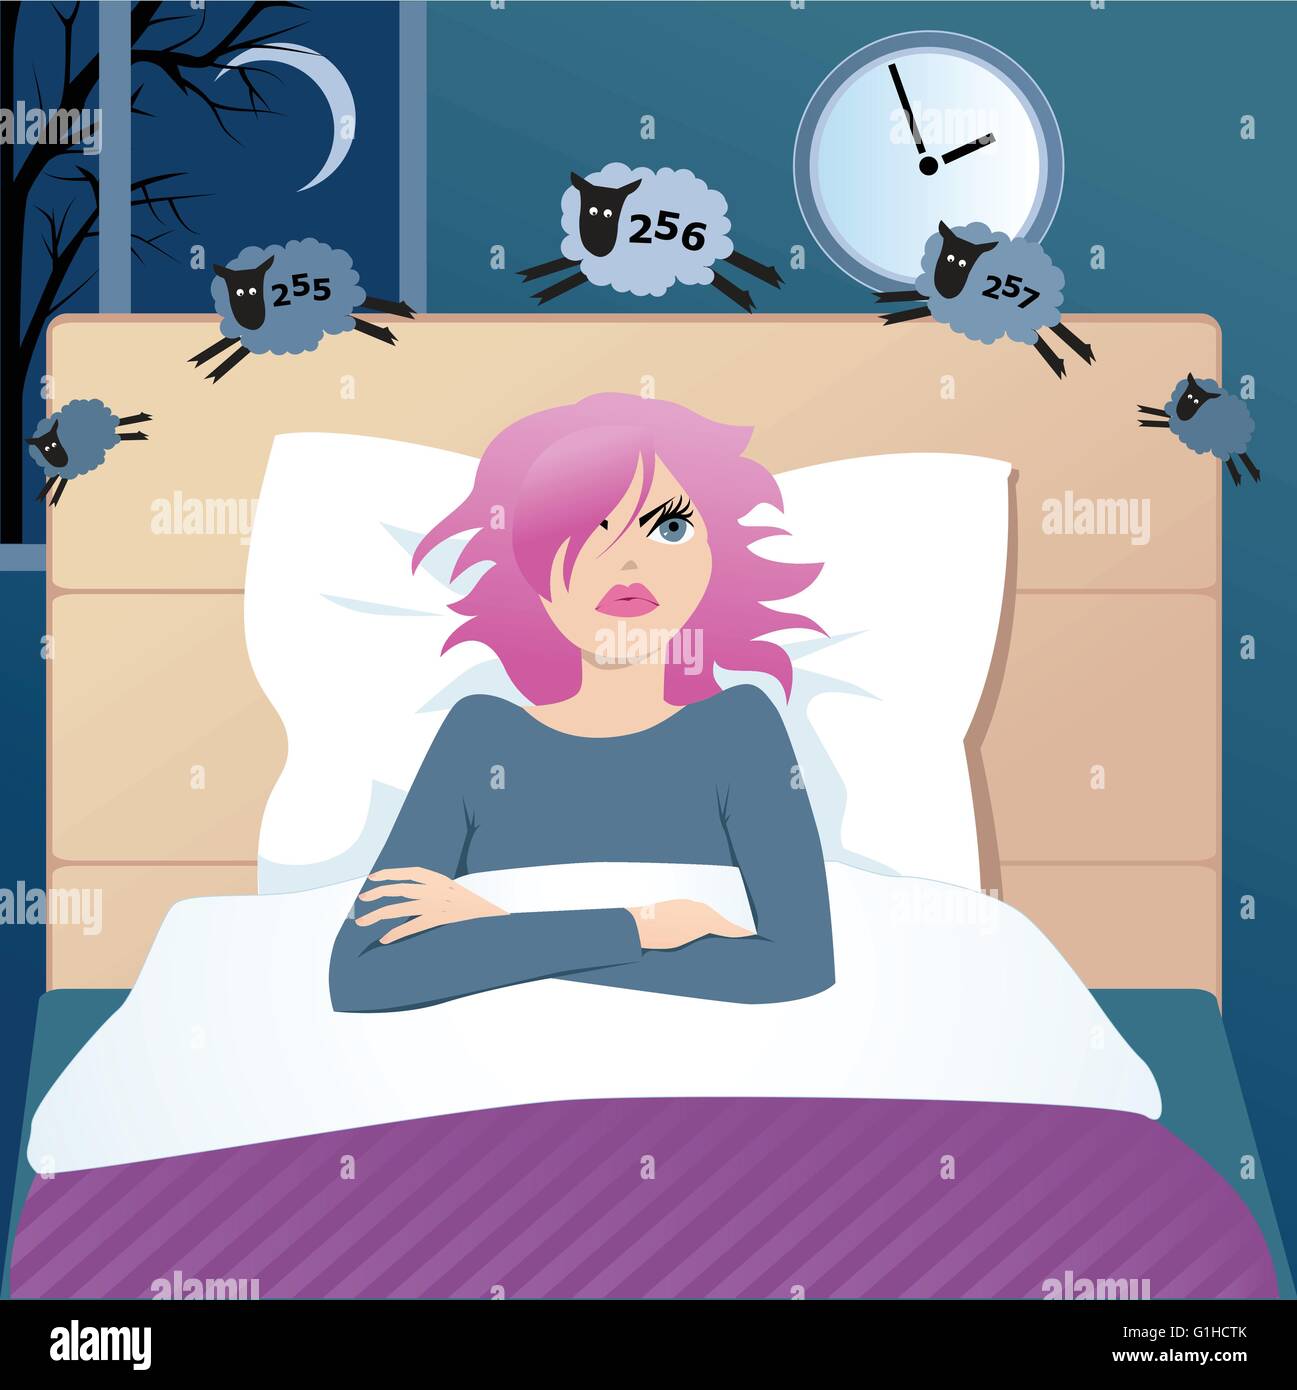 Cute funny cartoon girl avec insomnie couché dans un lit la nuit, compter les moutons, en essayant de s'endormir Illustration de Vecteur